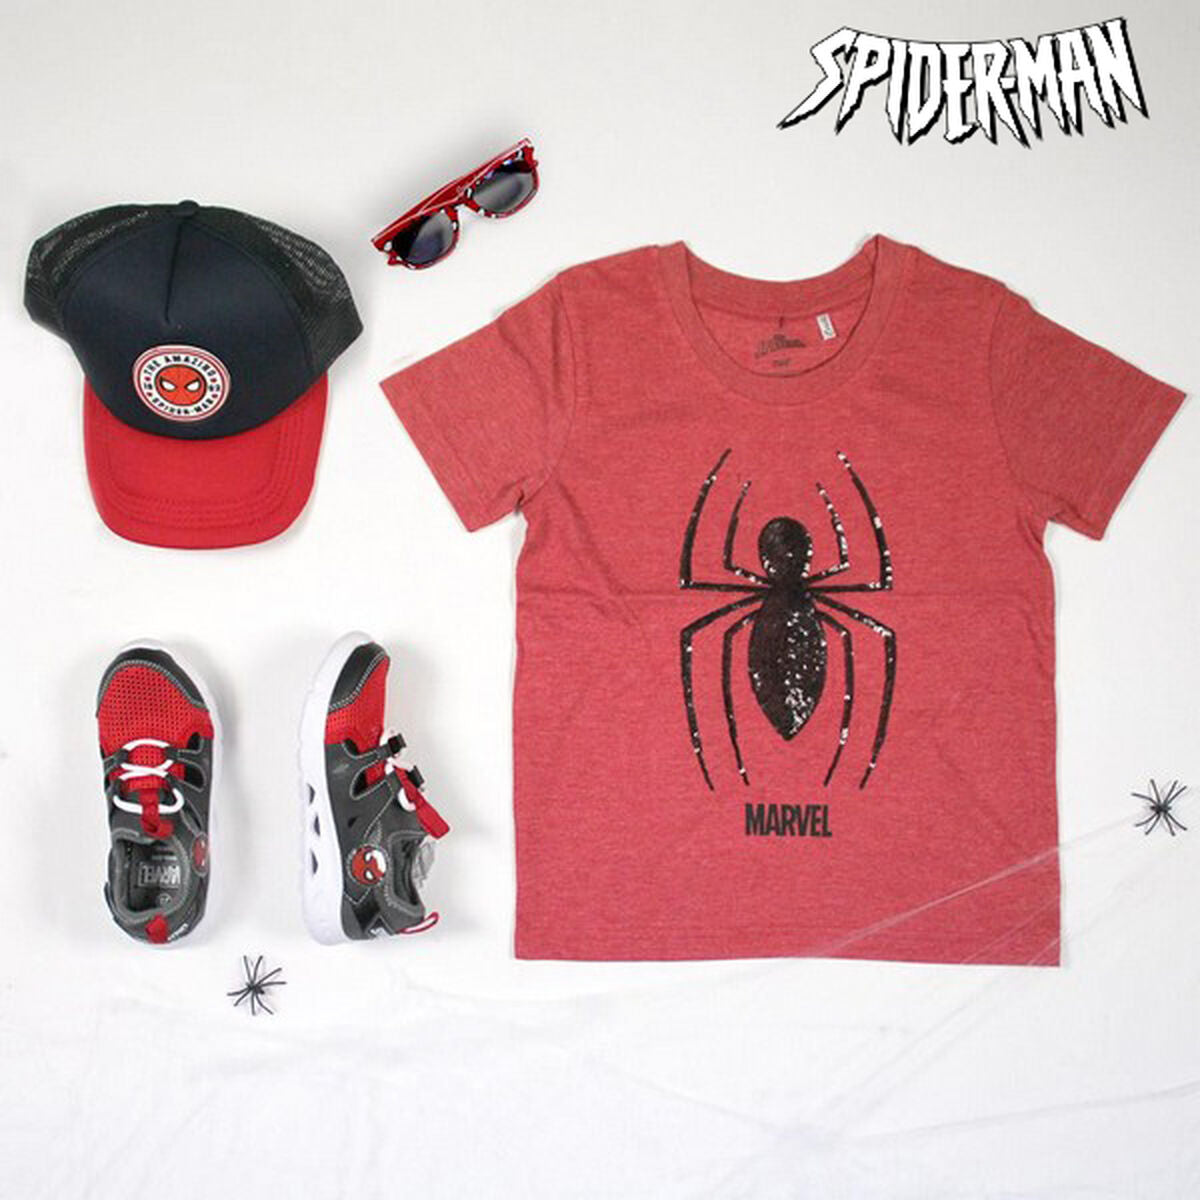 Chaussures de sport - Baskets pour Enfants Spiderman Rouge